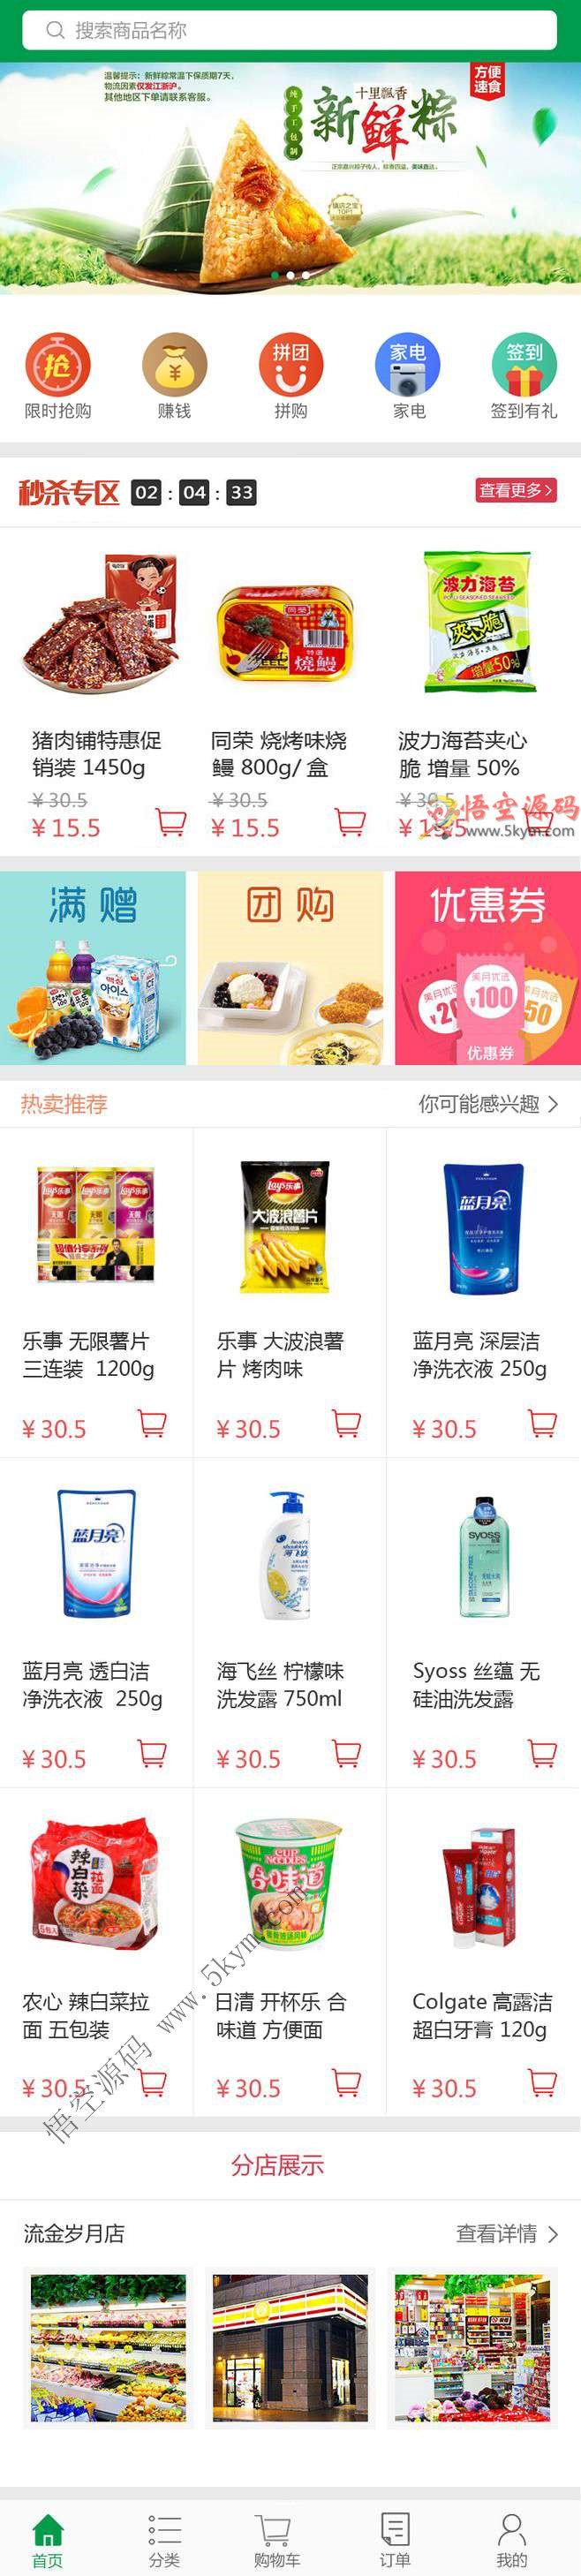 乐鑫购物商城手机app首页模板  html5网站源码下载